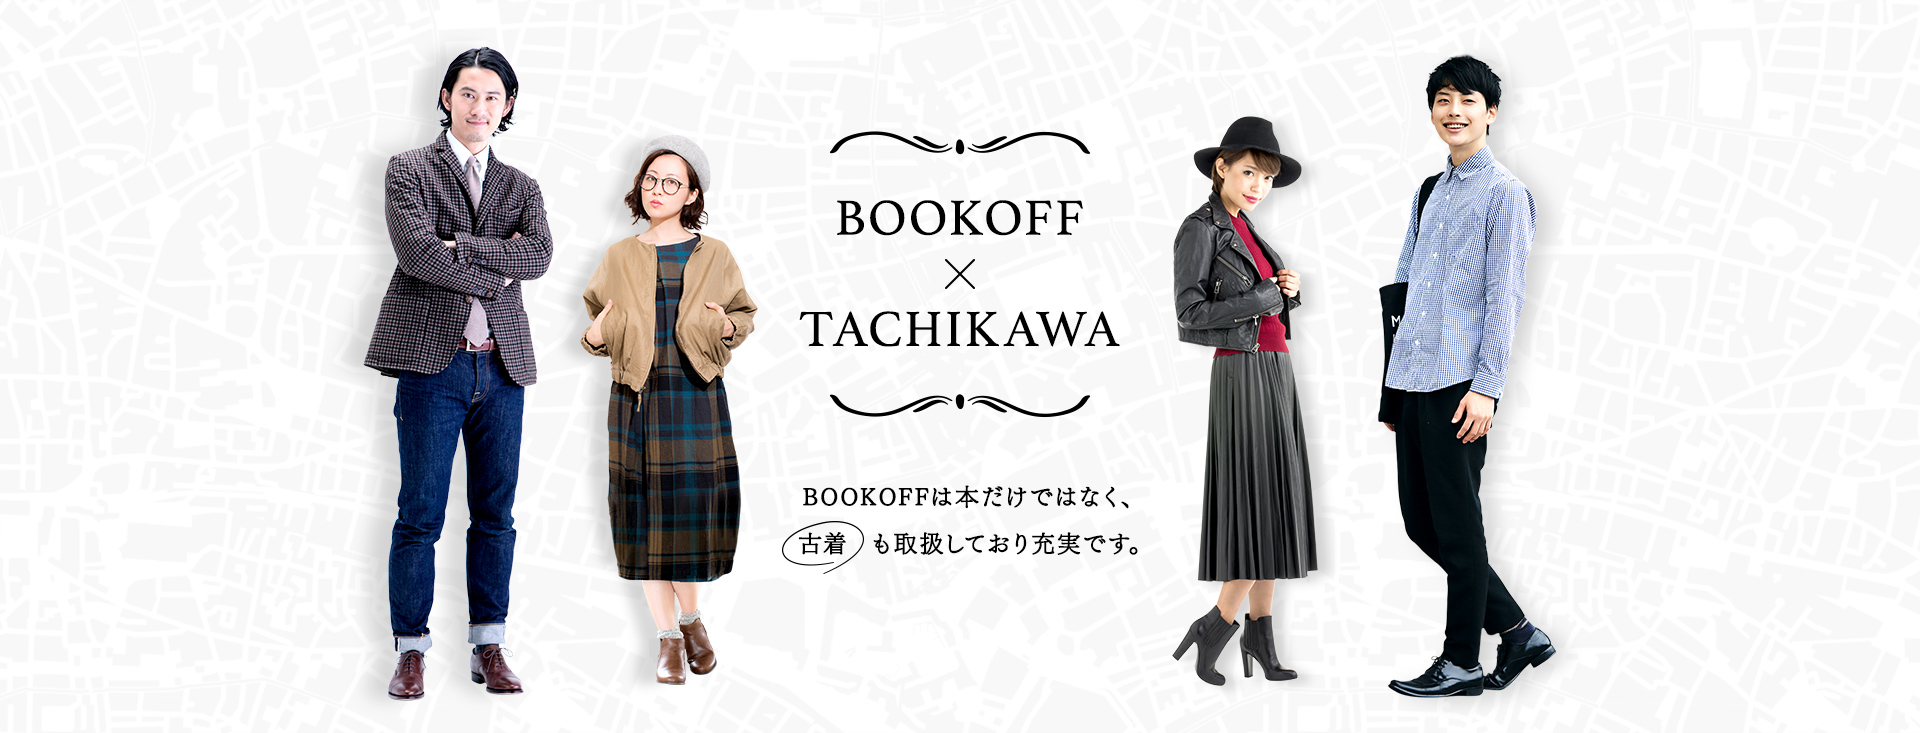 BOOKOFF×TACHIKAWA メインビジュアル